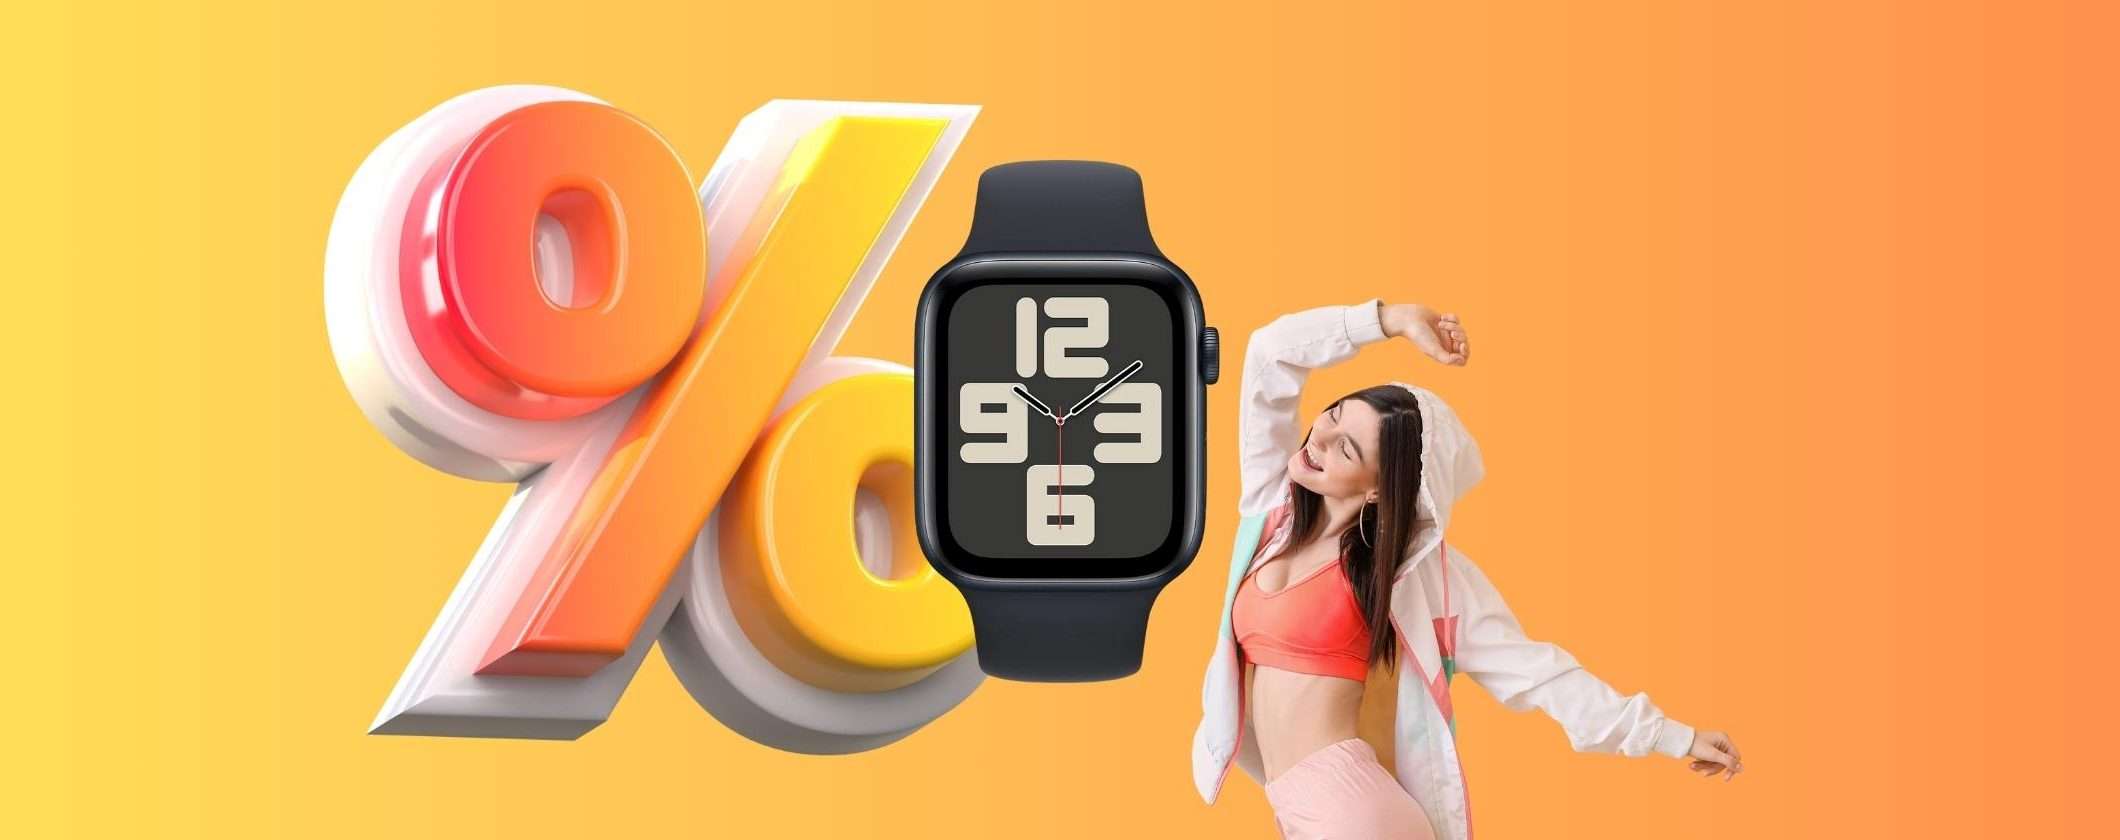 Apple Watch SE a soli 12€/mese con il Tasso Zero di MediaWorld